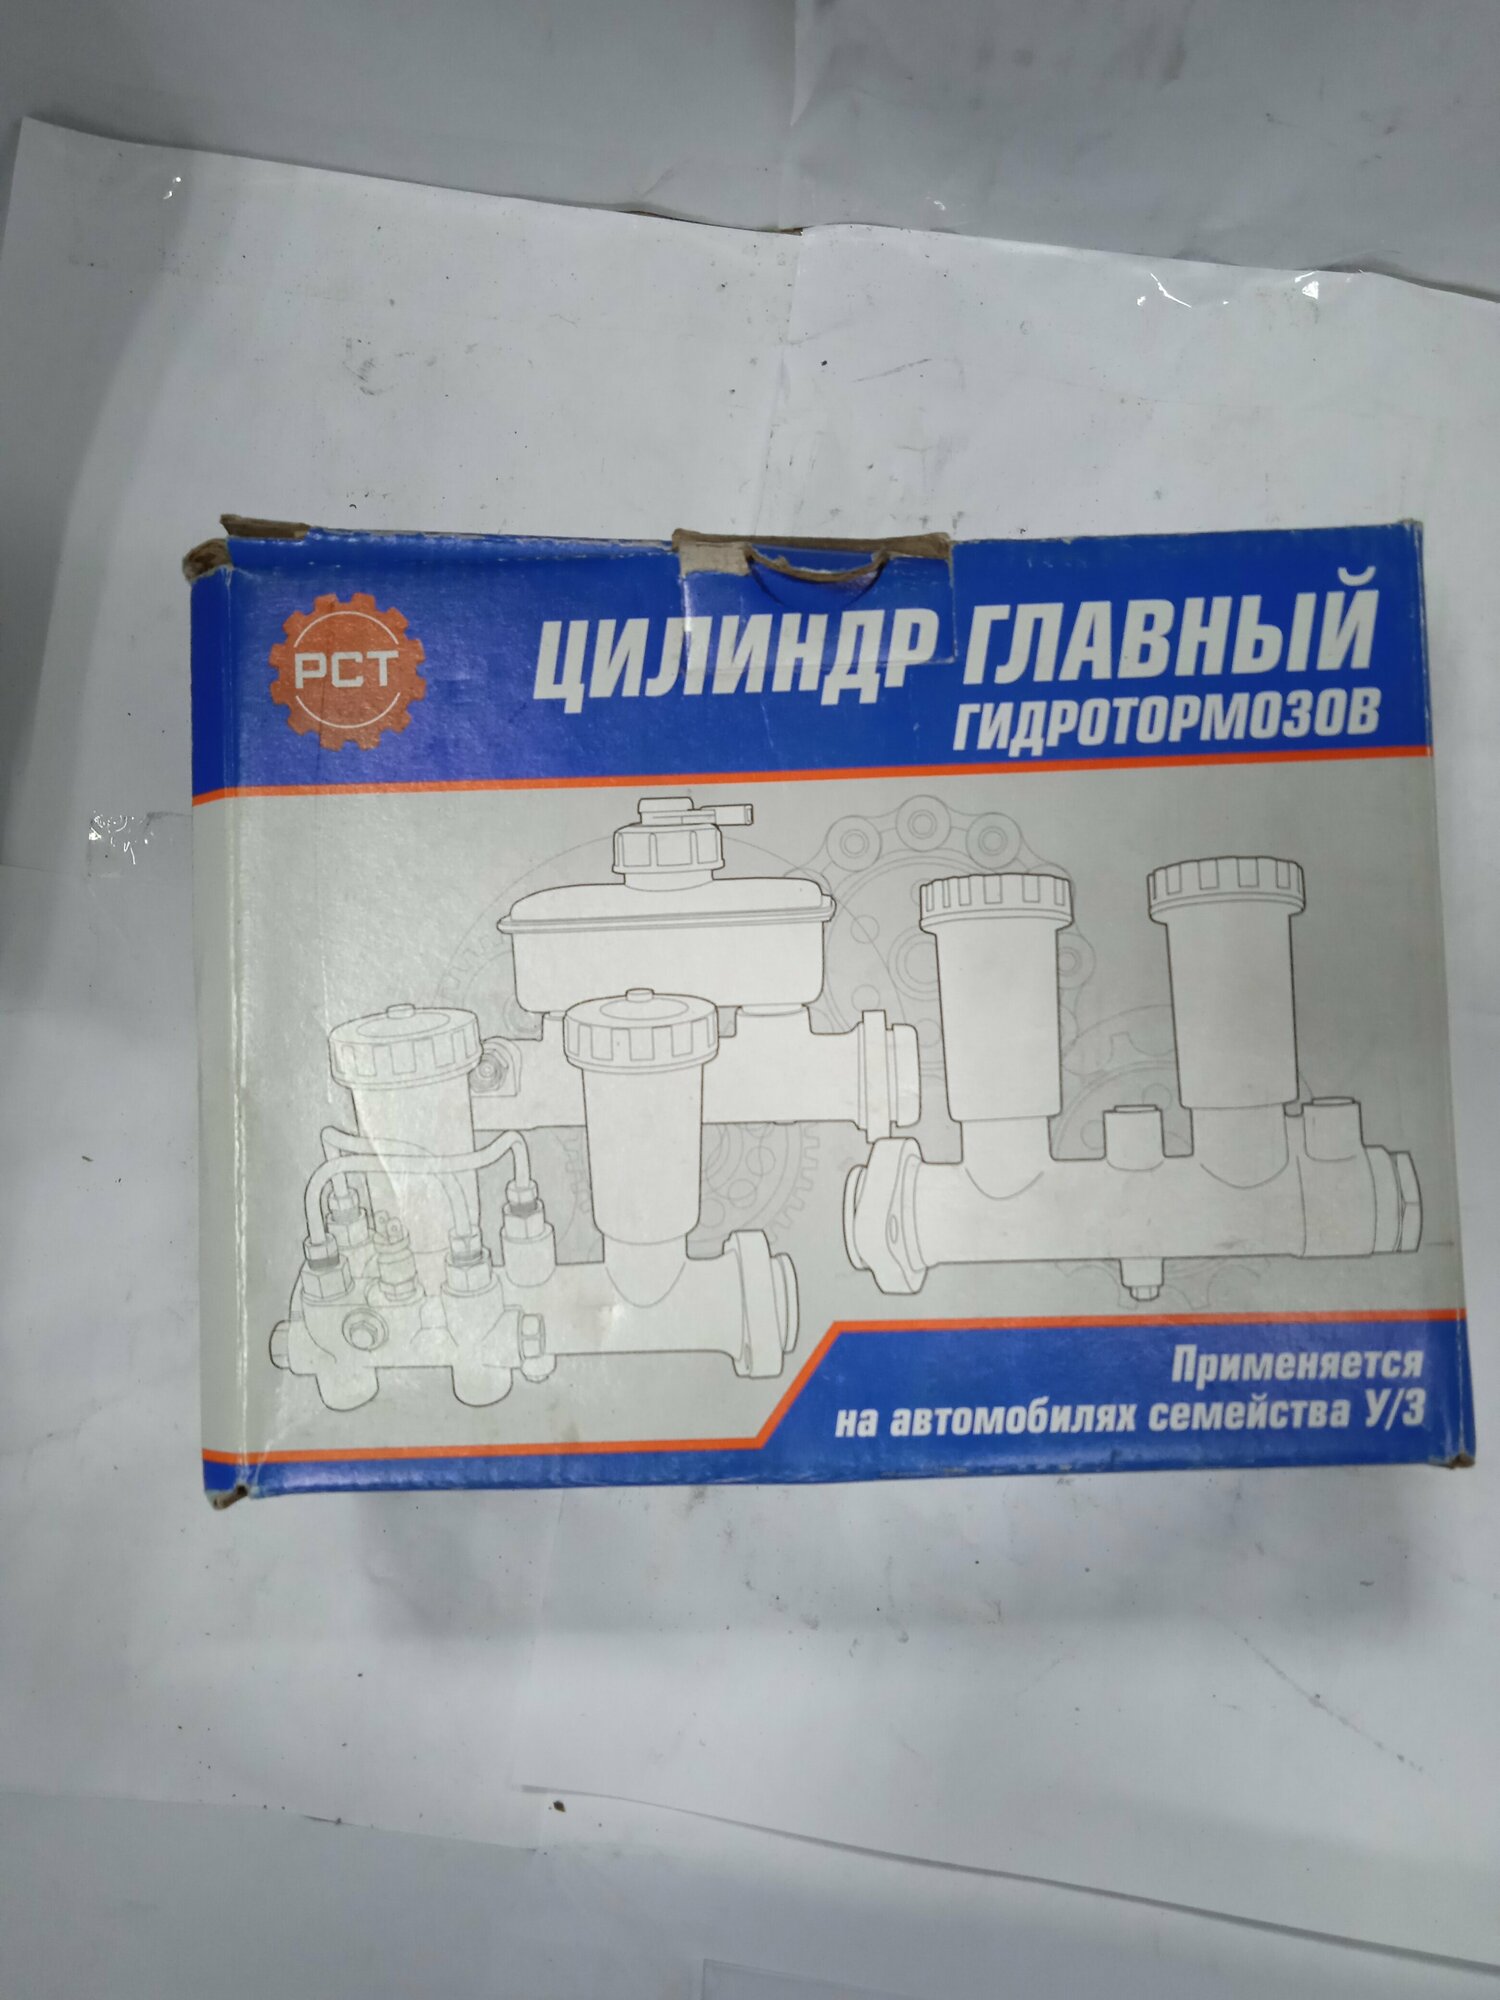 Цилиндр главный гидротормозов для УАЗ 3160